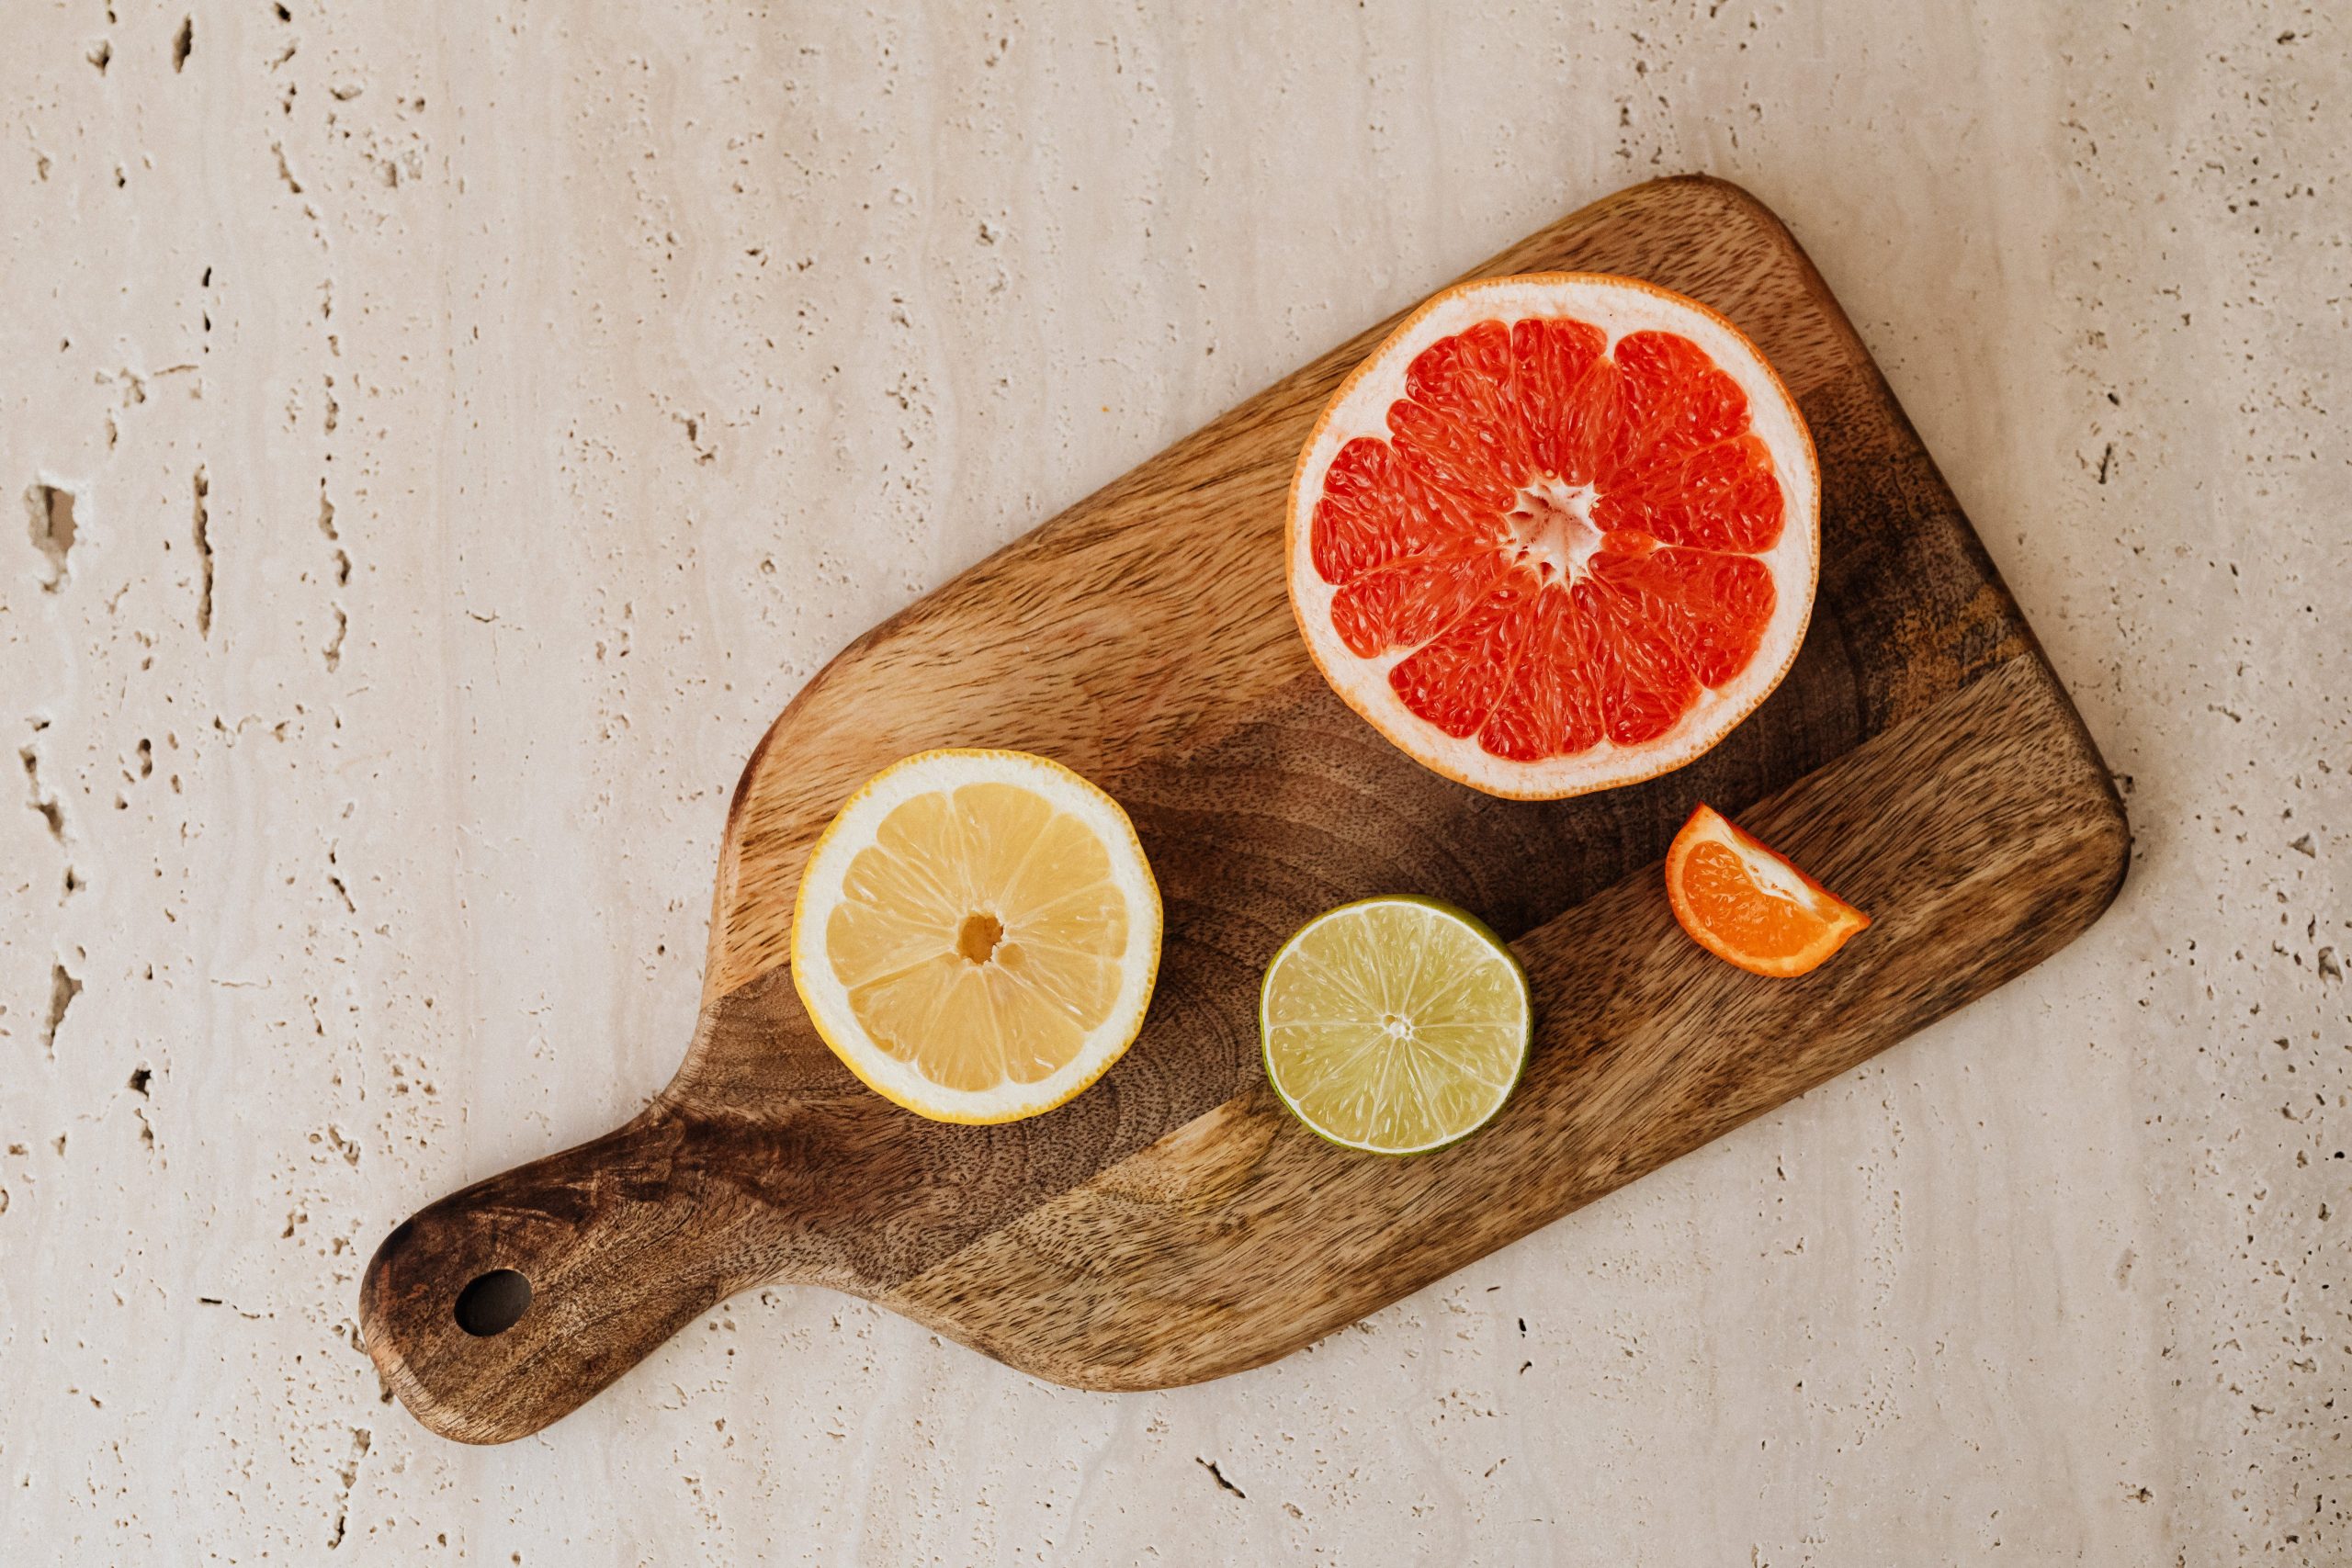 Poznaniacy uwielbiają cytrusy o tej porze roku – pomarańcze, mandarynki, grejpfruty i ich korzyści dla zdrowia